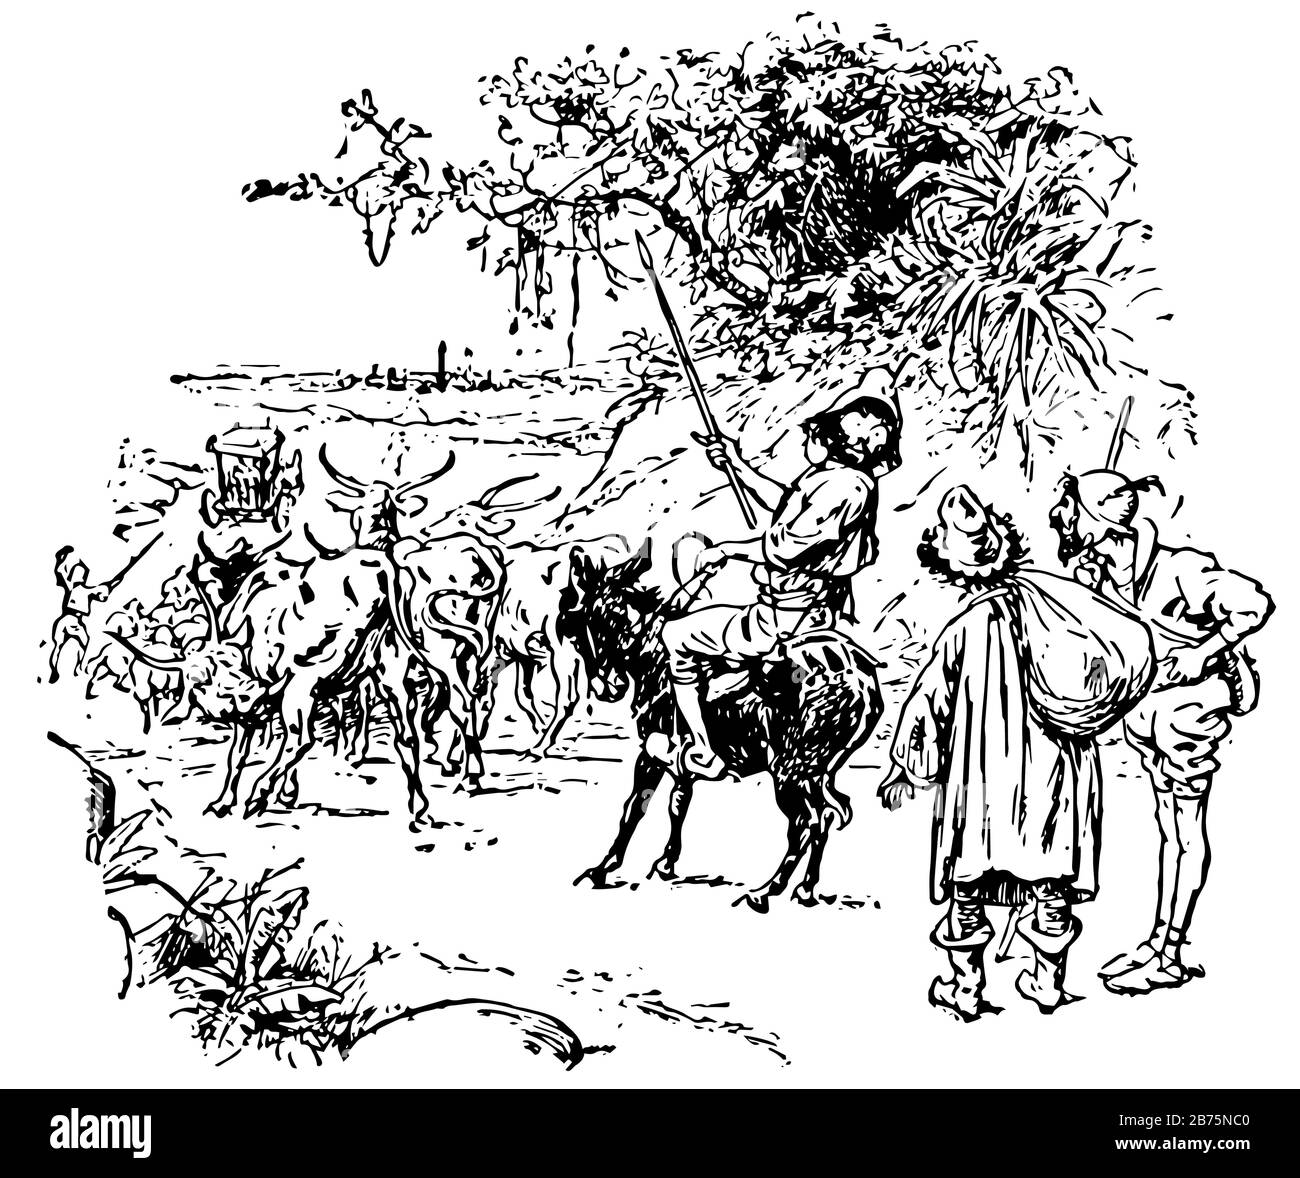 Mann auf Esel, diese Szene zeigt einen Mann, der auf einem Esel sitzt und Speer in der einen Hand hält und zurückblickt, zwei Menschen, die hinter ihm spazieren gehen, andere Tiere w Stock Vektor